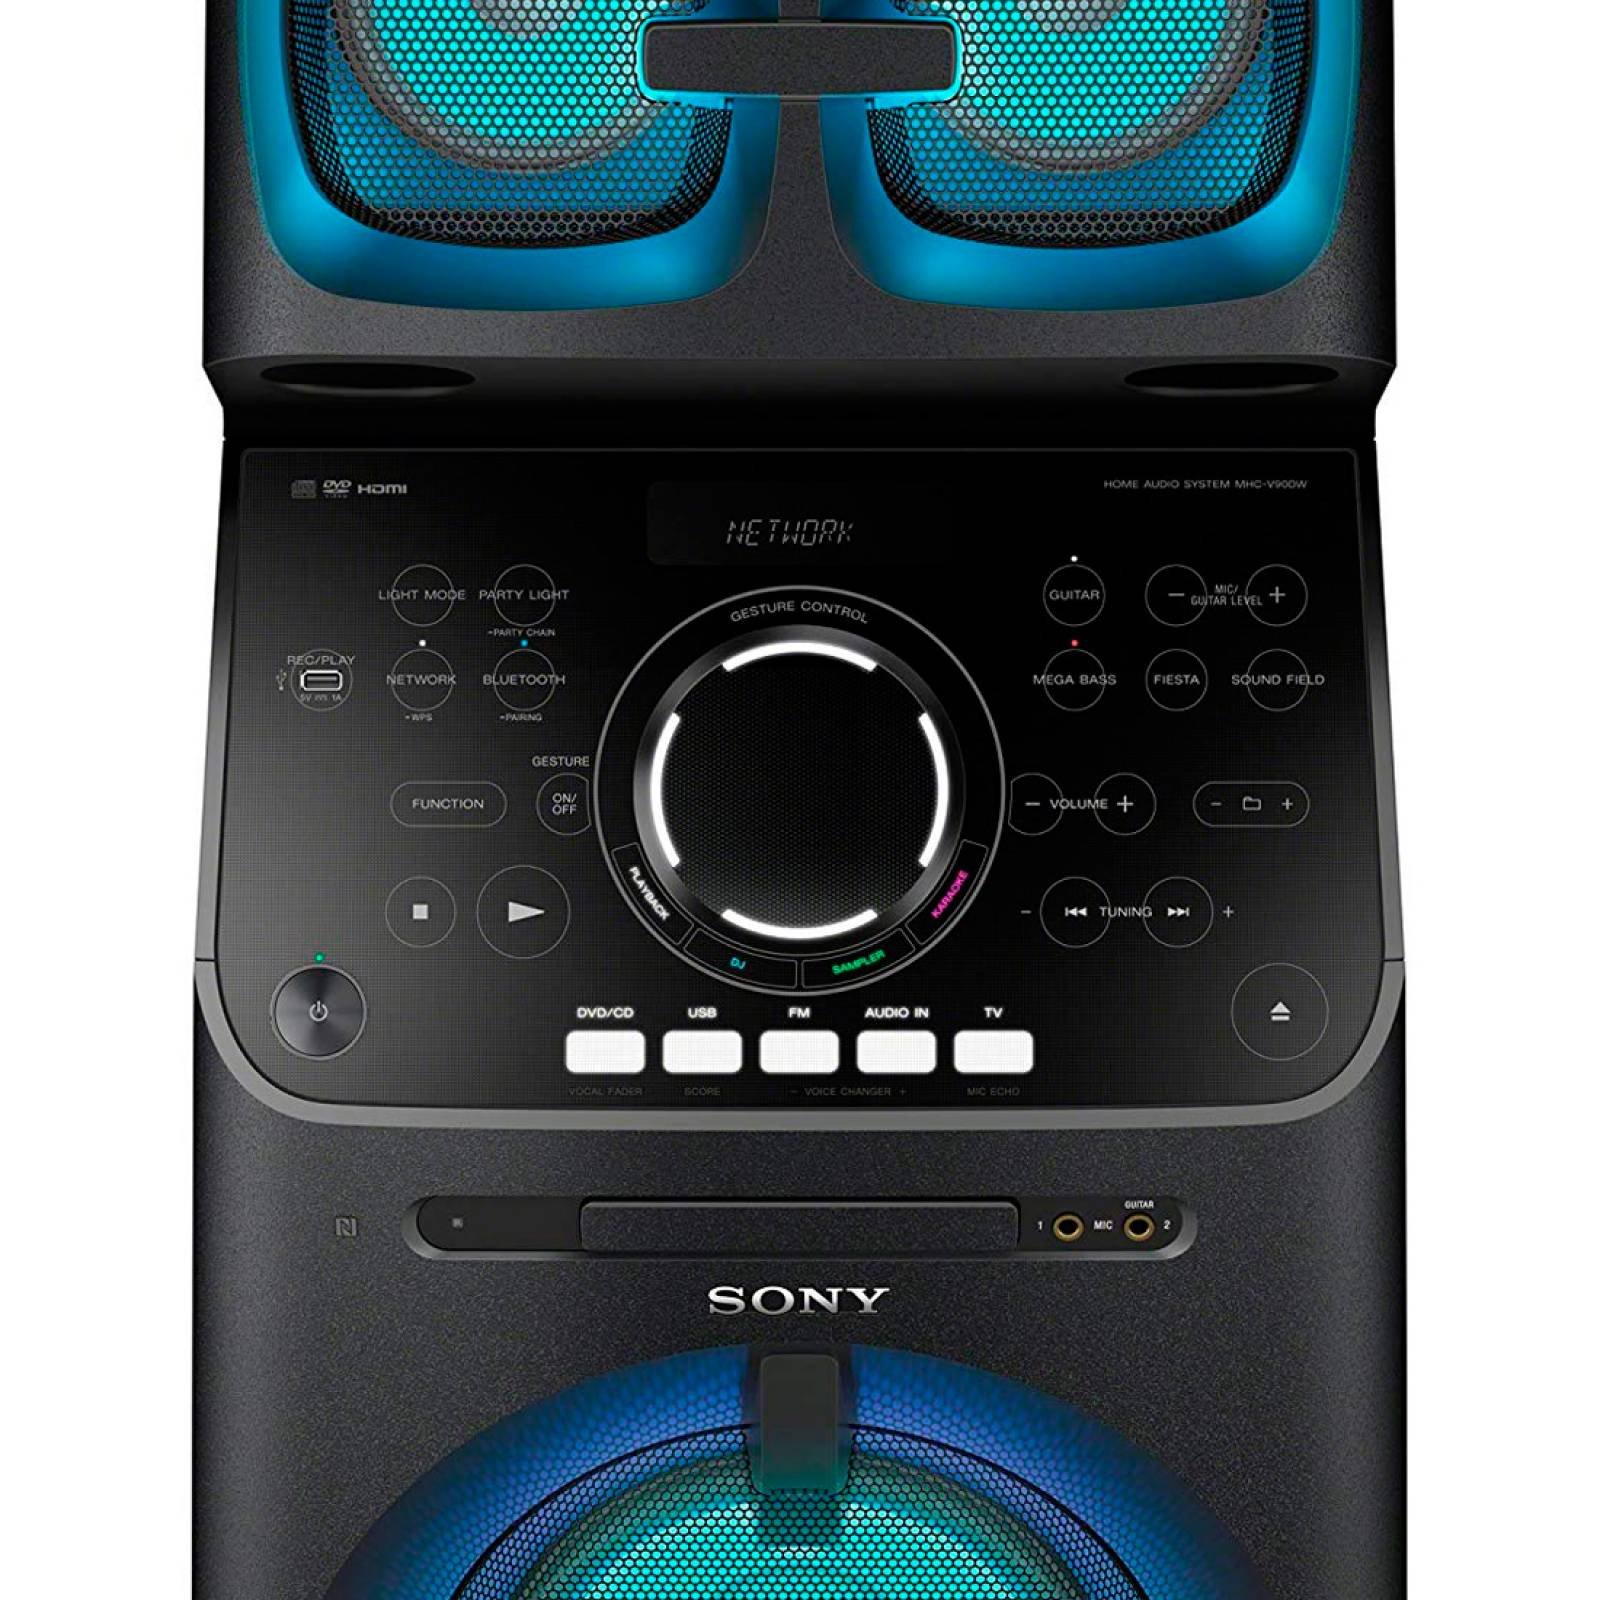 Minicomponente Torre Bluetooth Muteki 2000W MHC-V90DW Sony